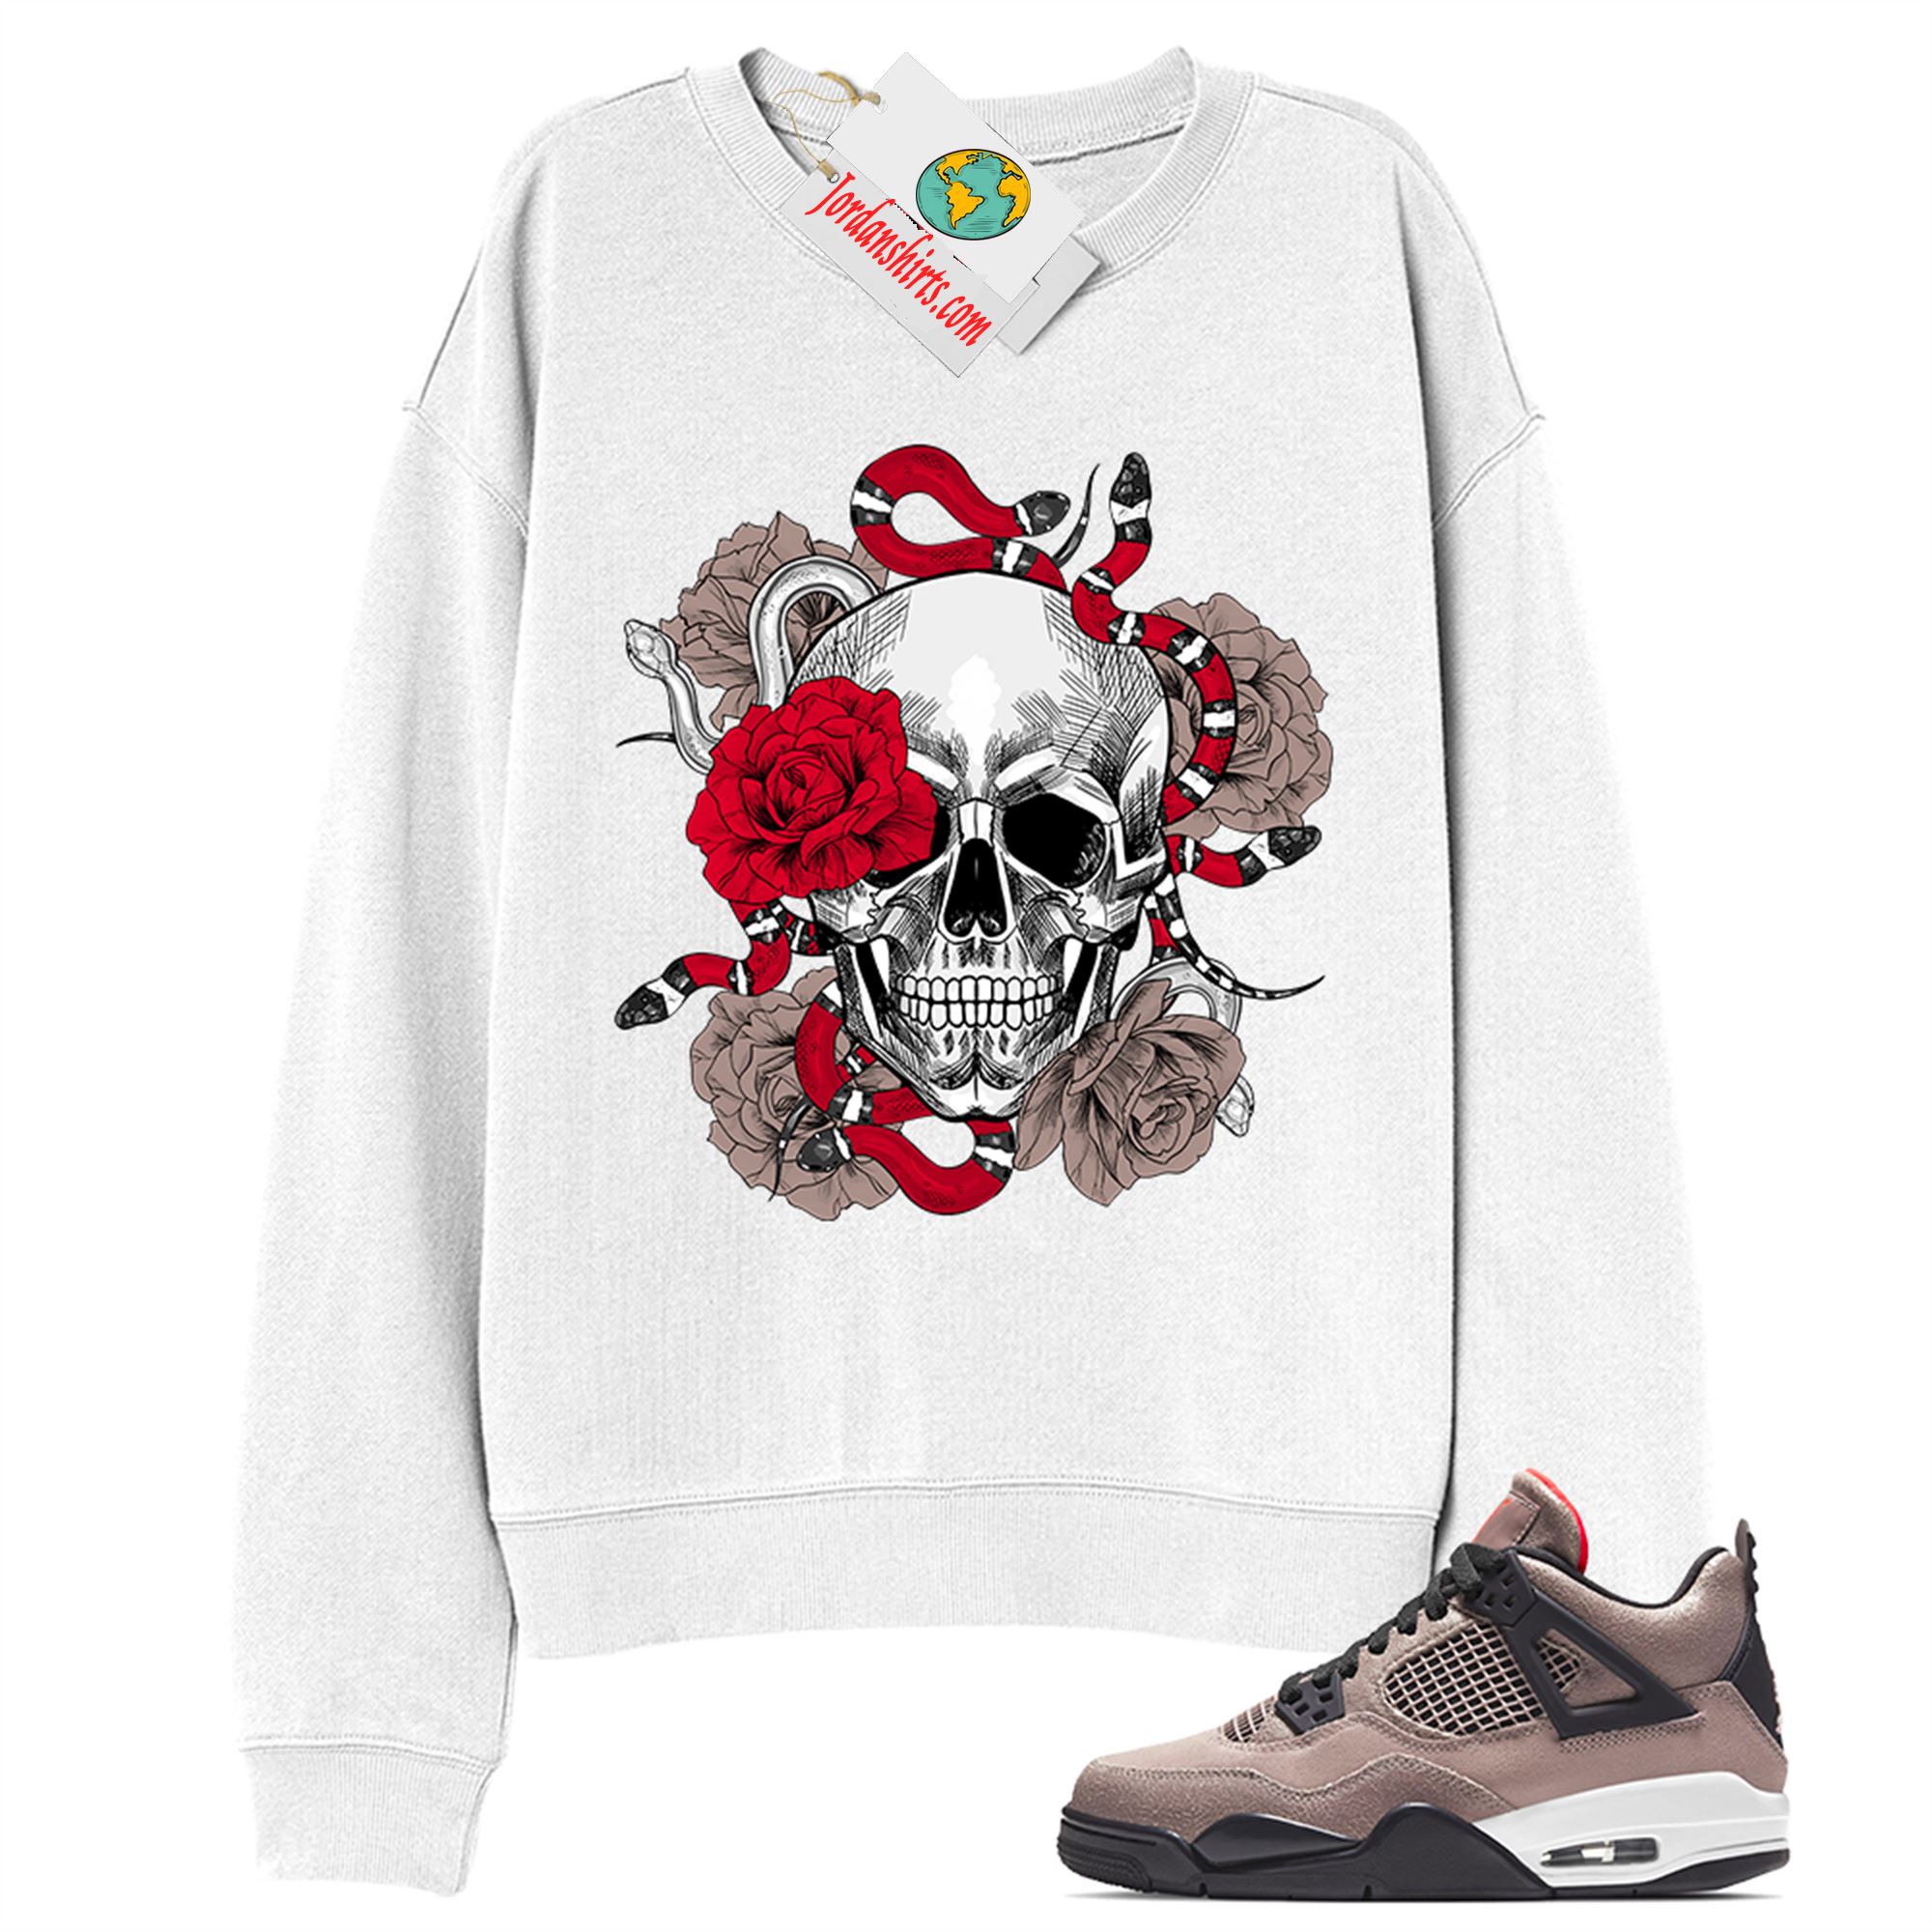 Jordan 4 Sweatshirt, Snake Skull Rose White Sweatshirt Air Jordan 4 Taupe Haze 4s Plus Size Up To 5xl